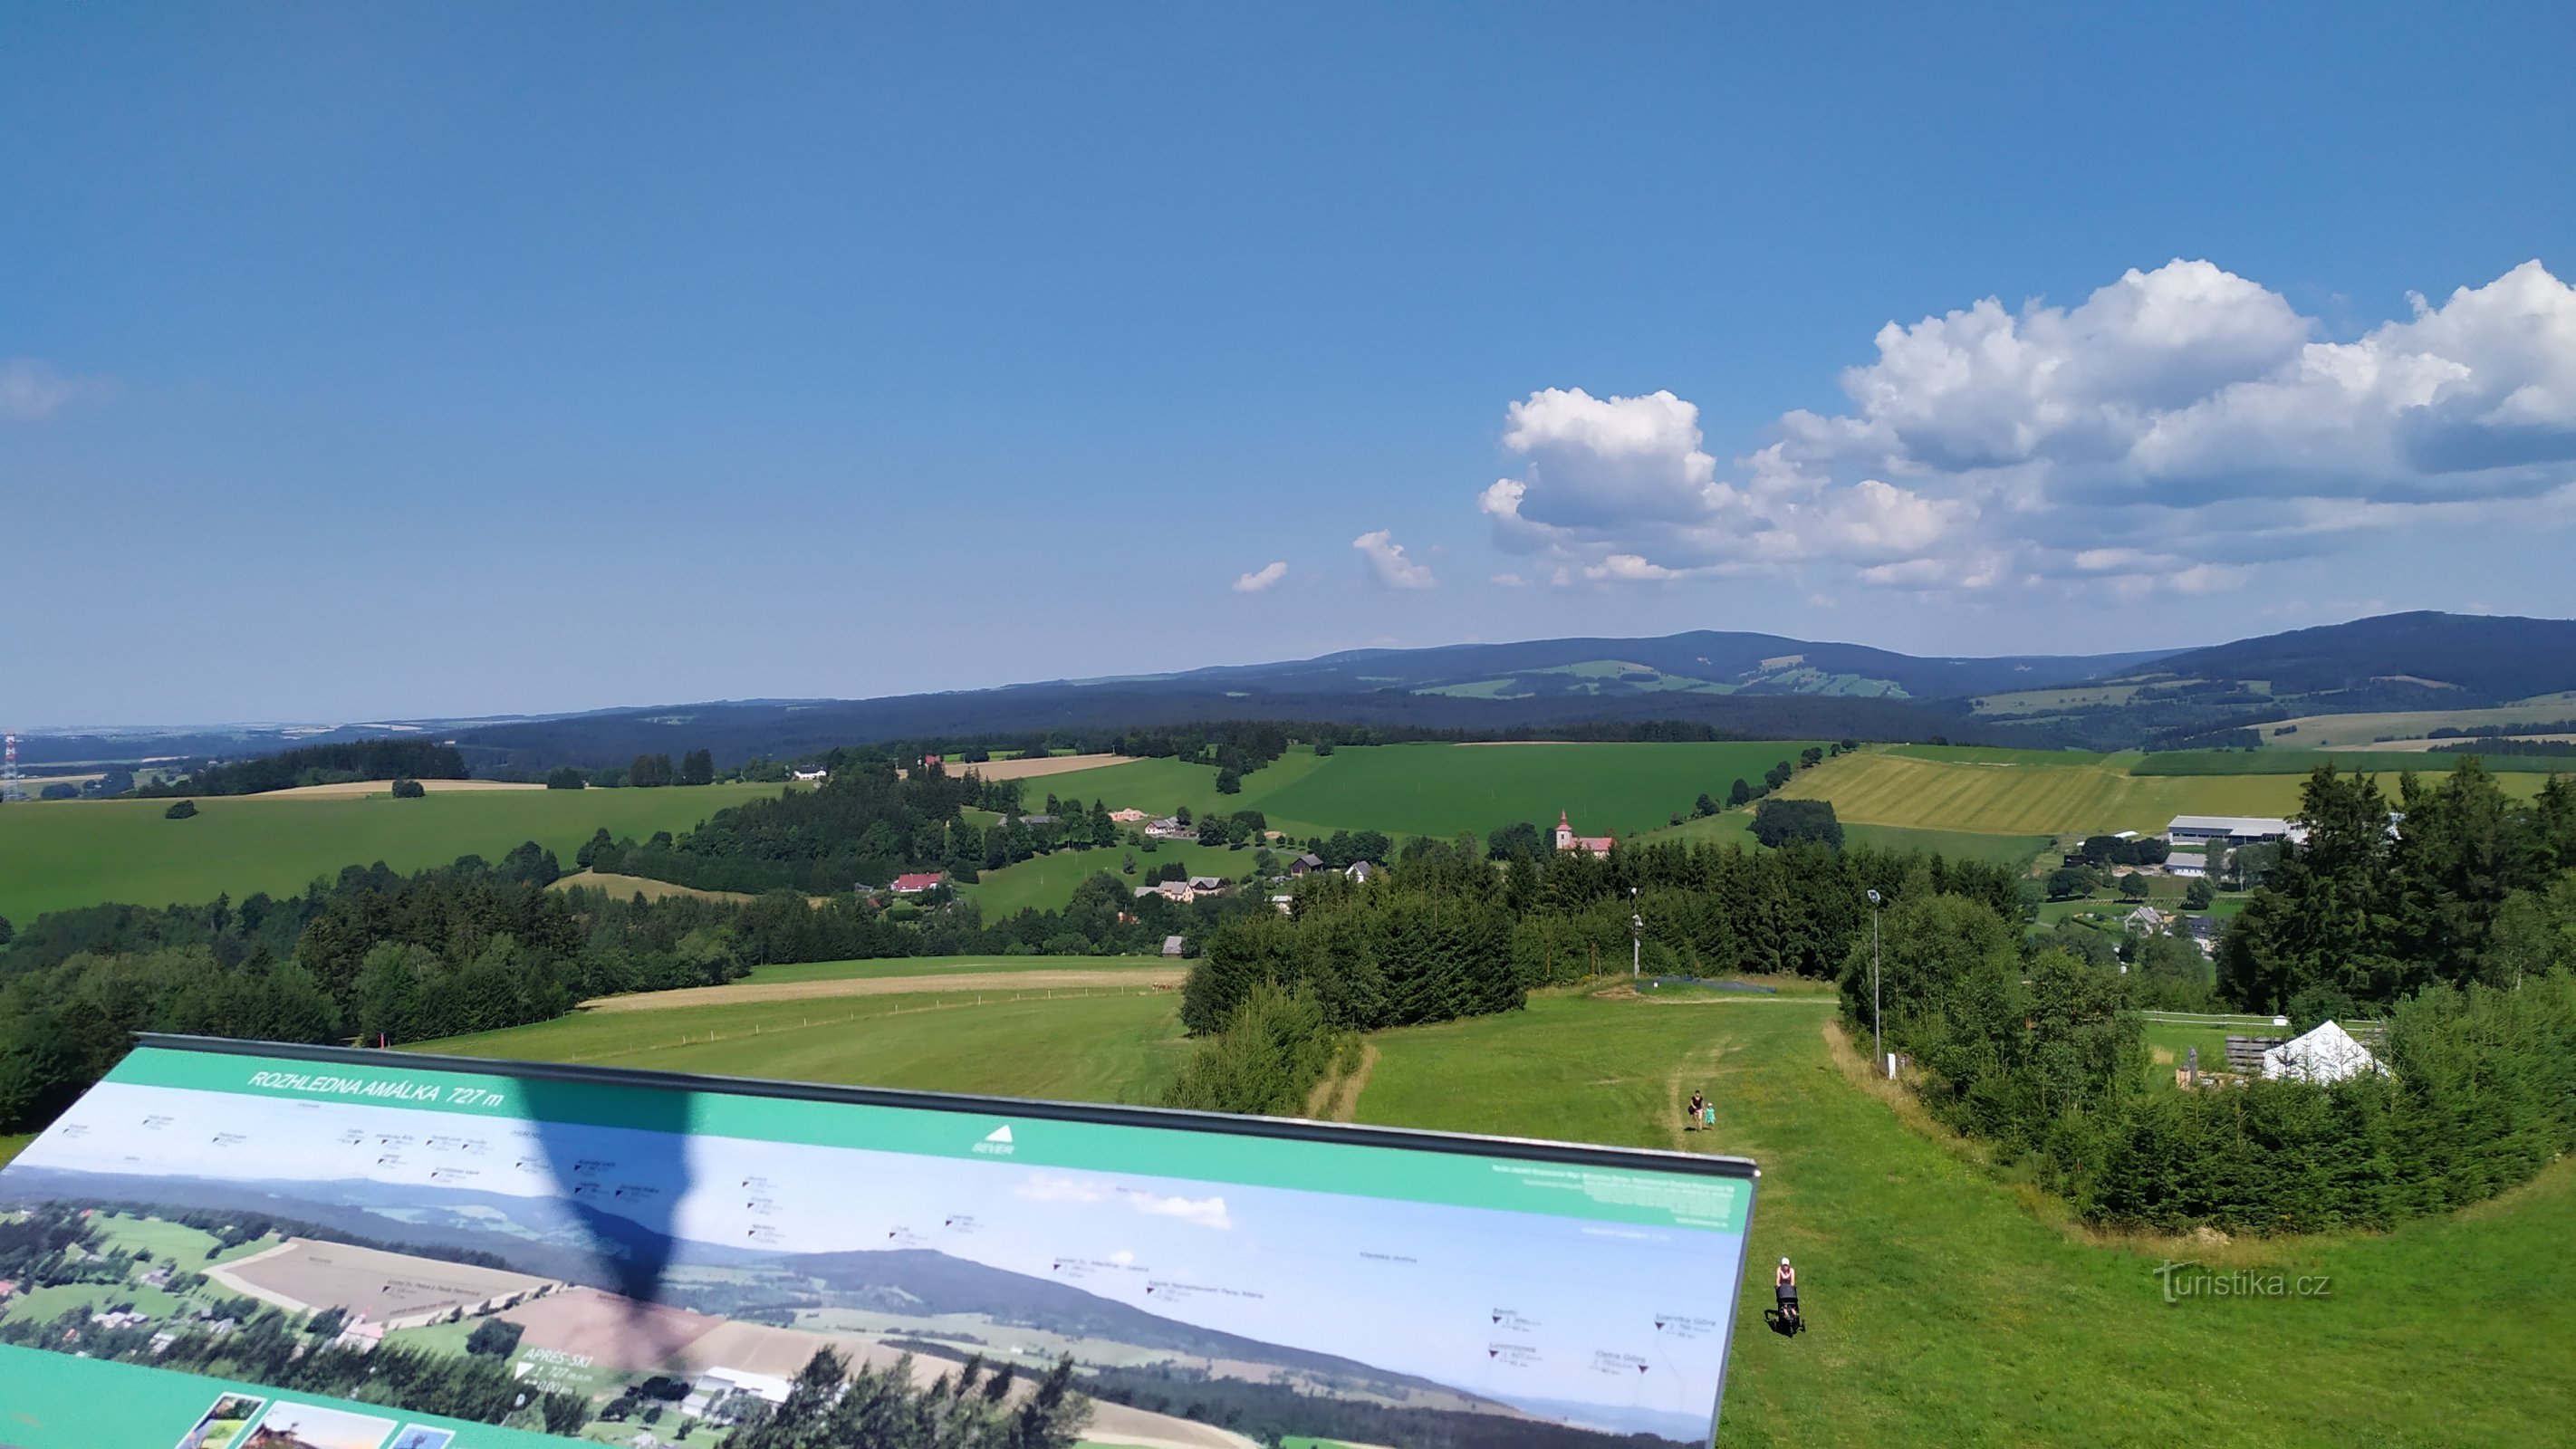 Vedeți în direcția nord, în prim plan satul České Petrovice, în depărtare zona de schi Říčky